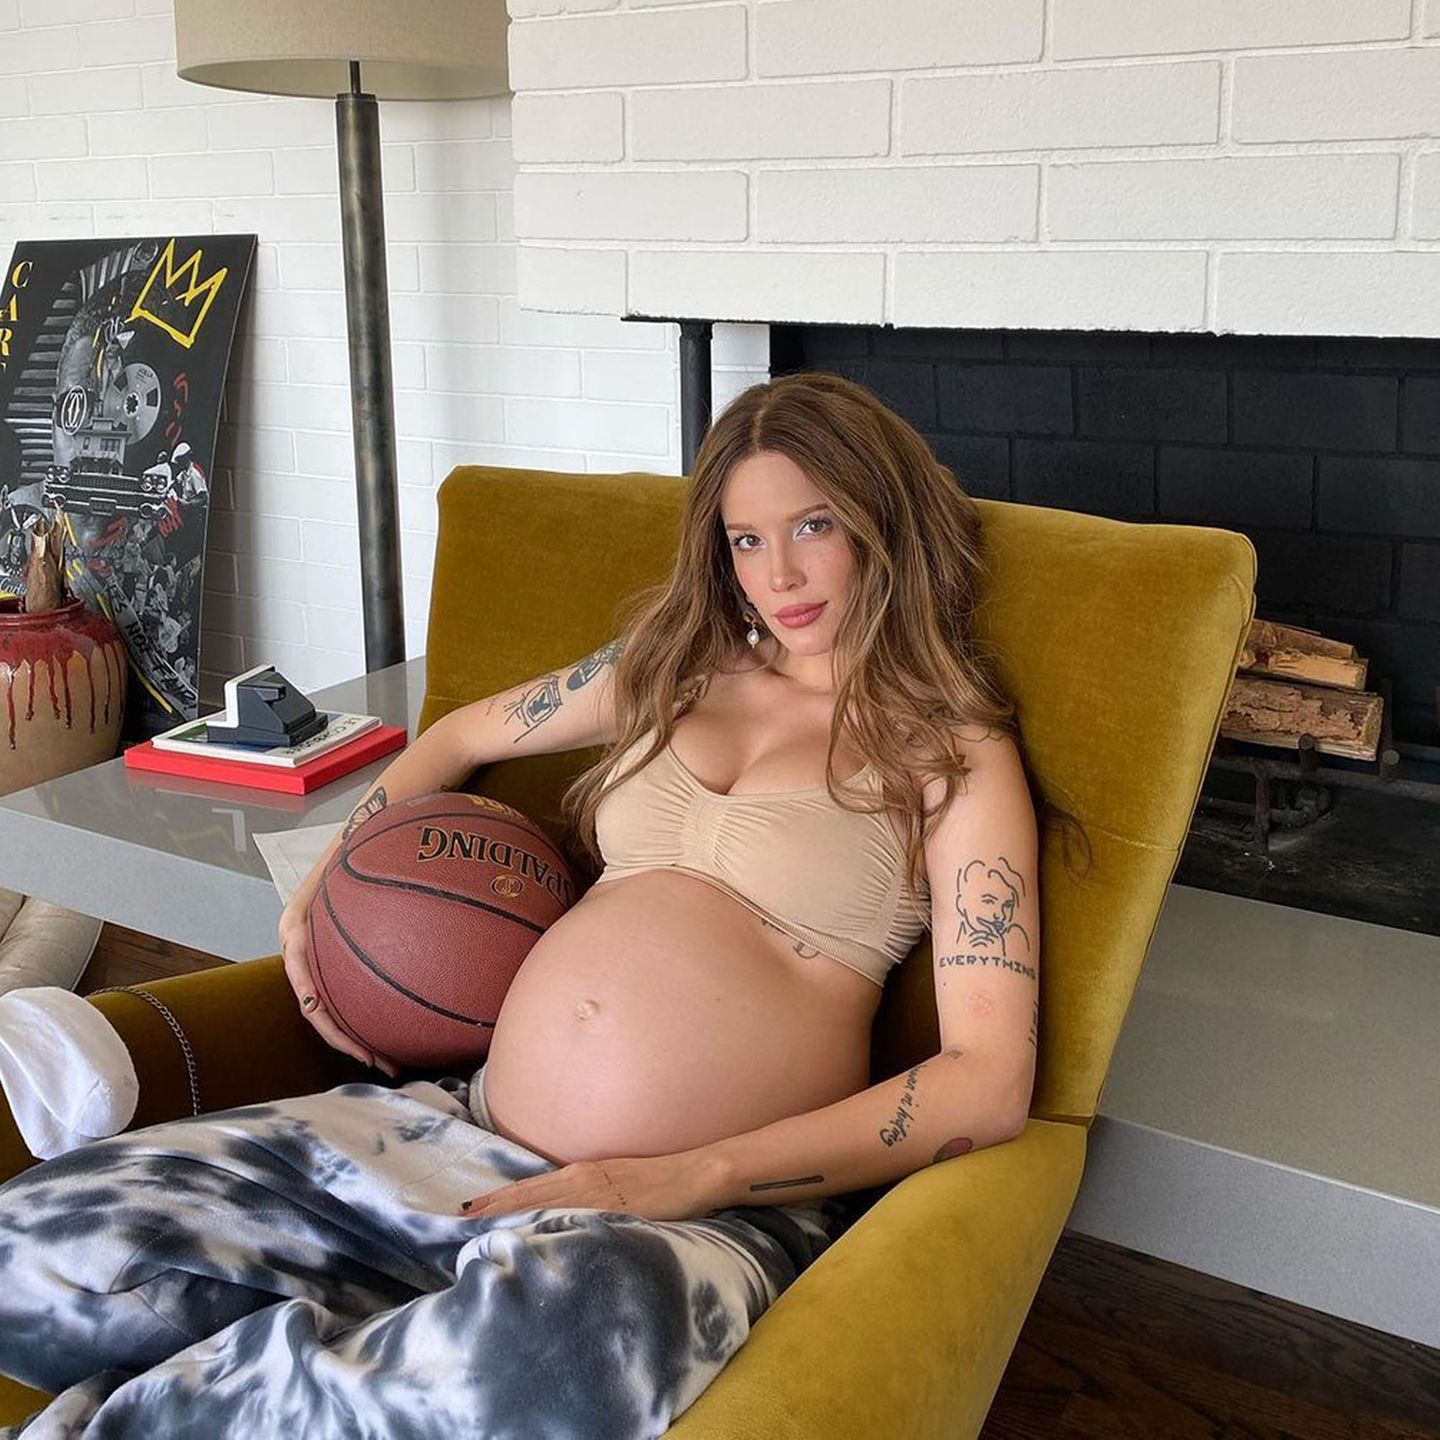 Elektro-Pop-Sängerin Halsey hat für die Größe ihrer süßen Babykugel einen guten Vergleich gefunden: einen Basketball. Und auch sonst passt dieser Vergleich, das Spiel wird, wie sie schreibt, von Tag zu Tag schwerer.